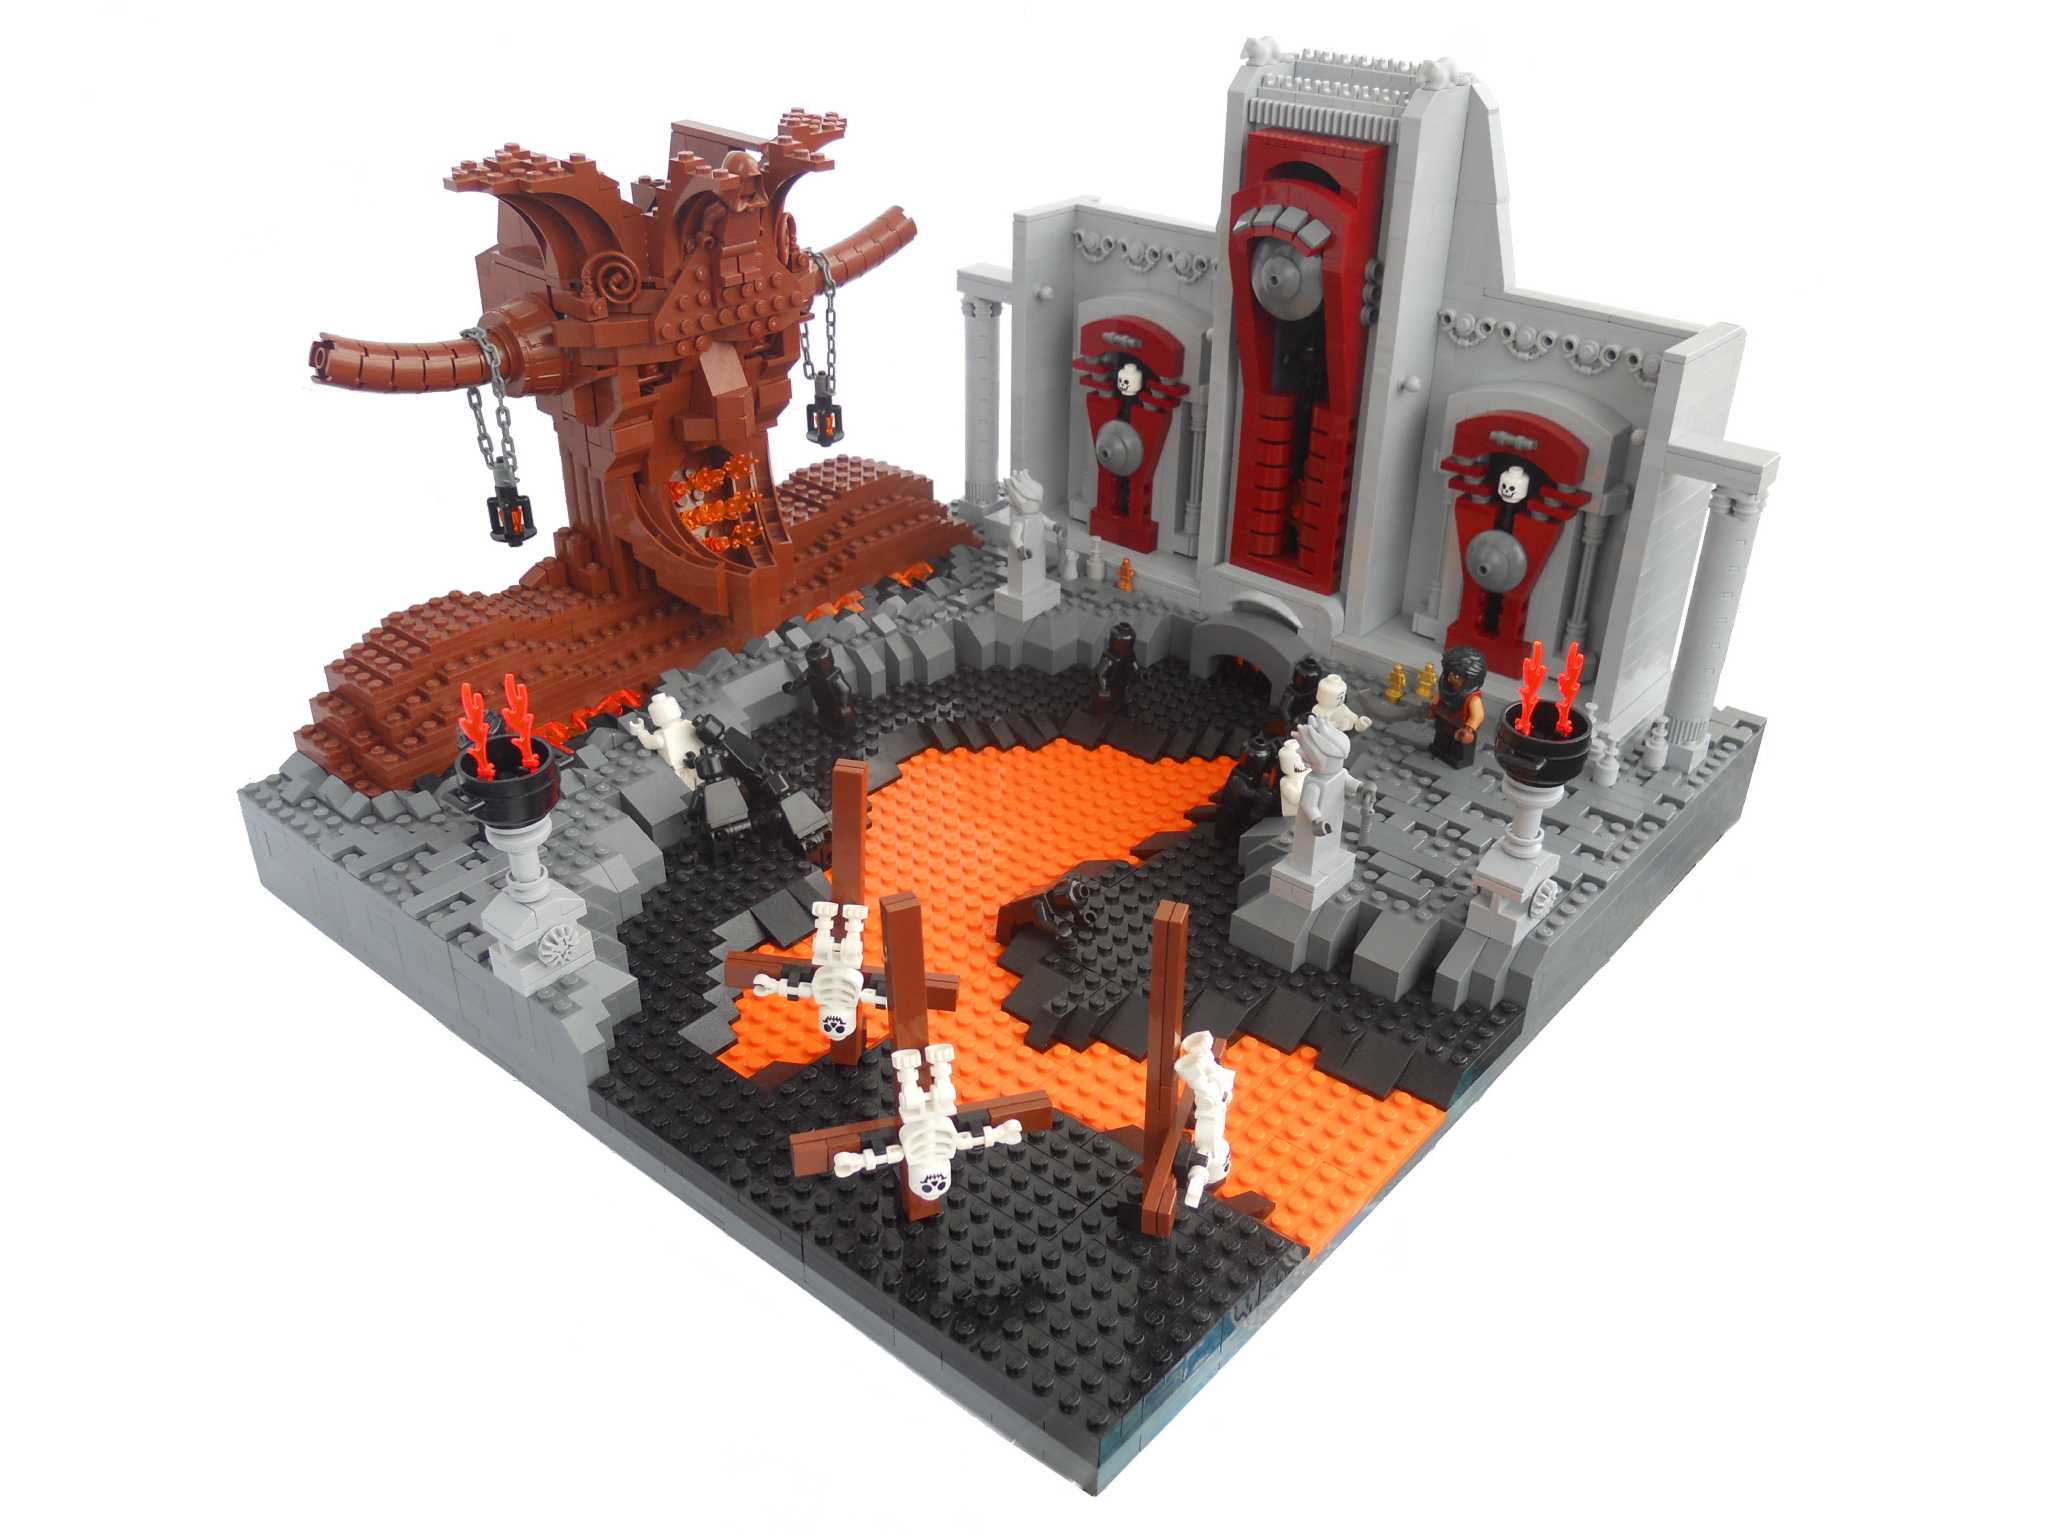 Dante's Lego : r/KnowingBetter